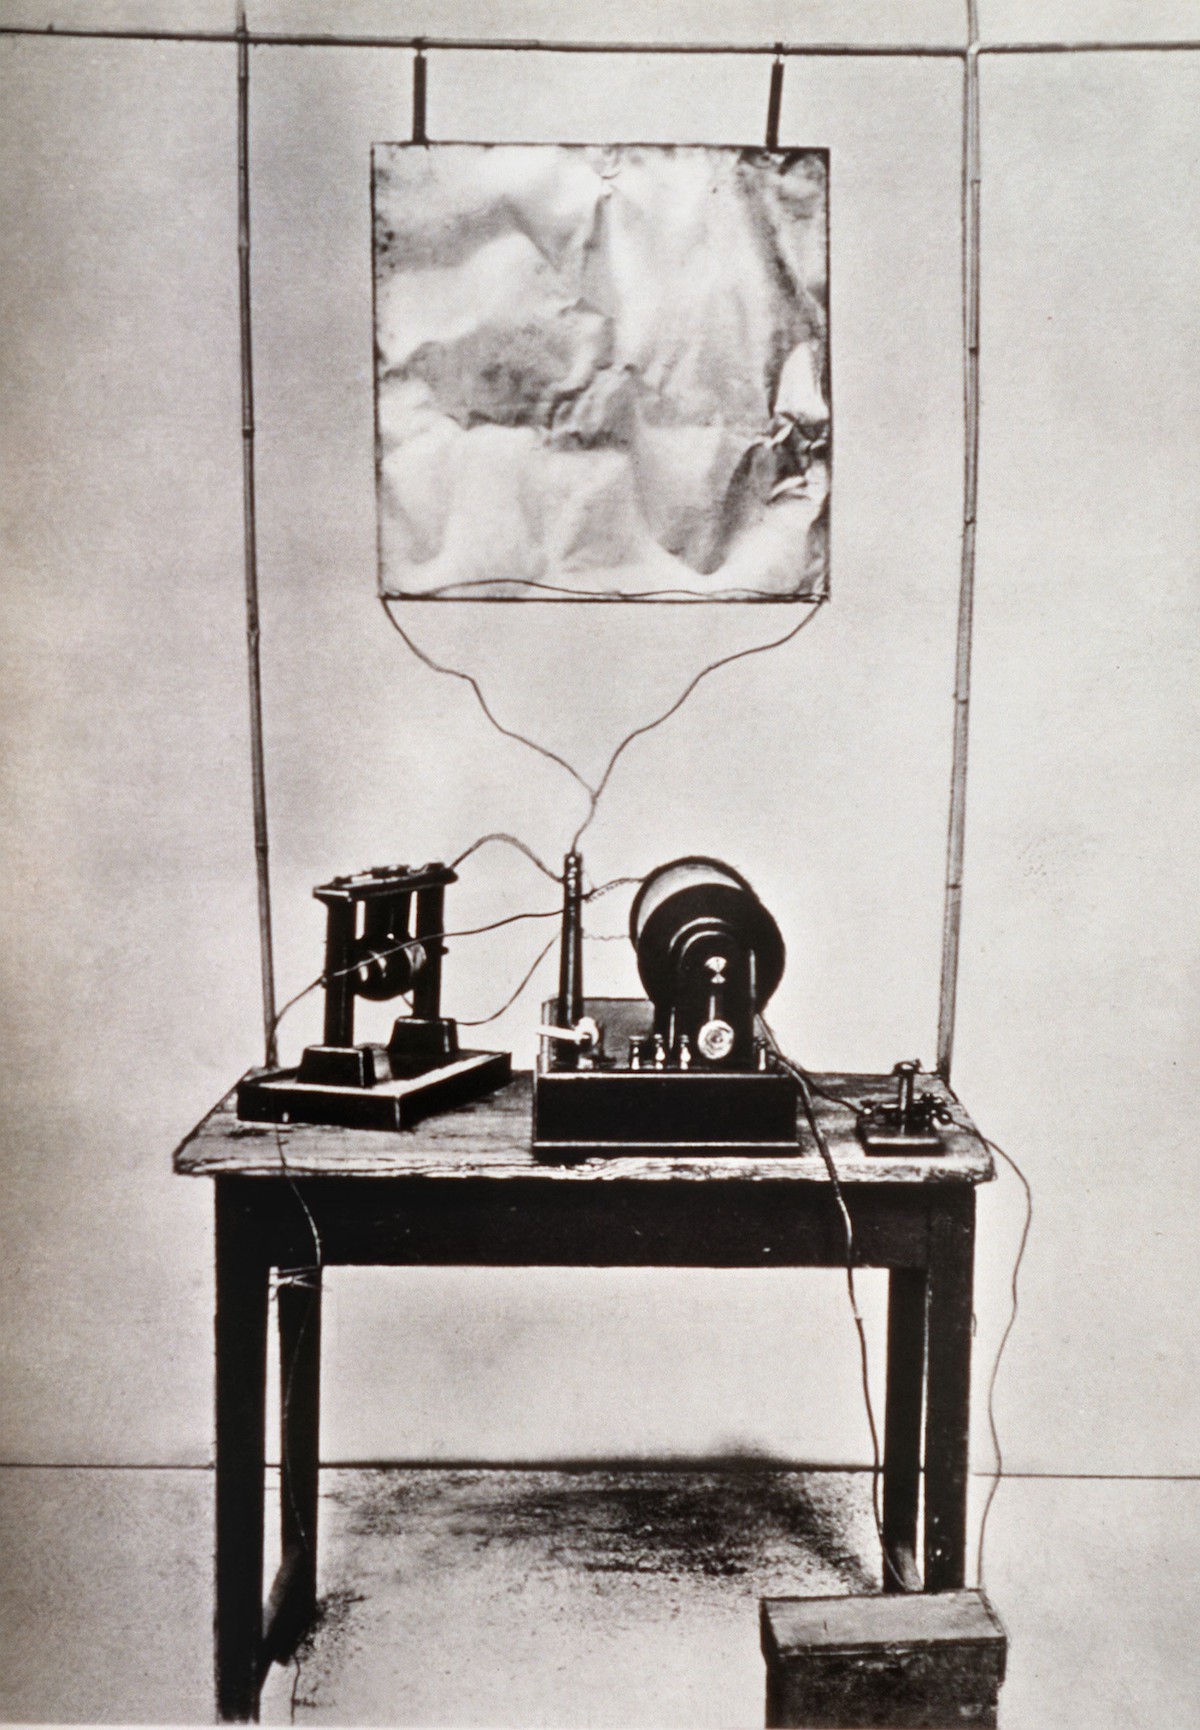 无线电发明者马可尼的有生之年与今天的马可尼